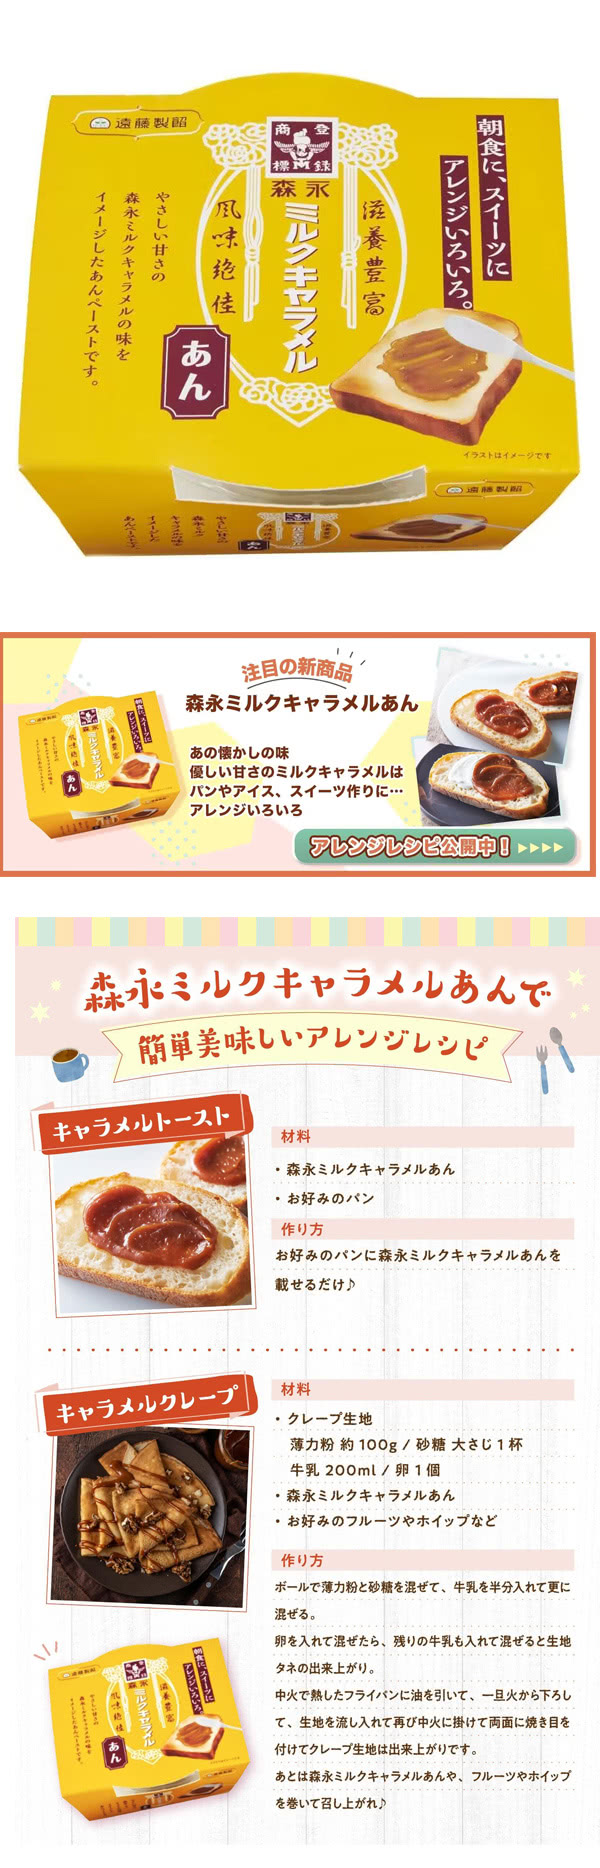 日本原裝 森永牛奶糖抹醬/小倉紅豆抹醬(2入)優惠推薦